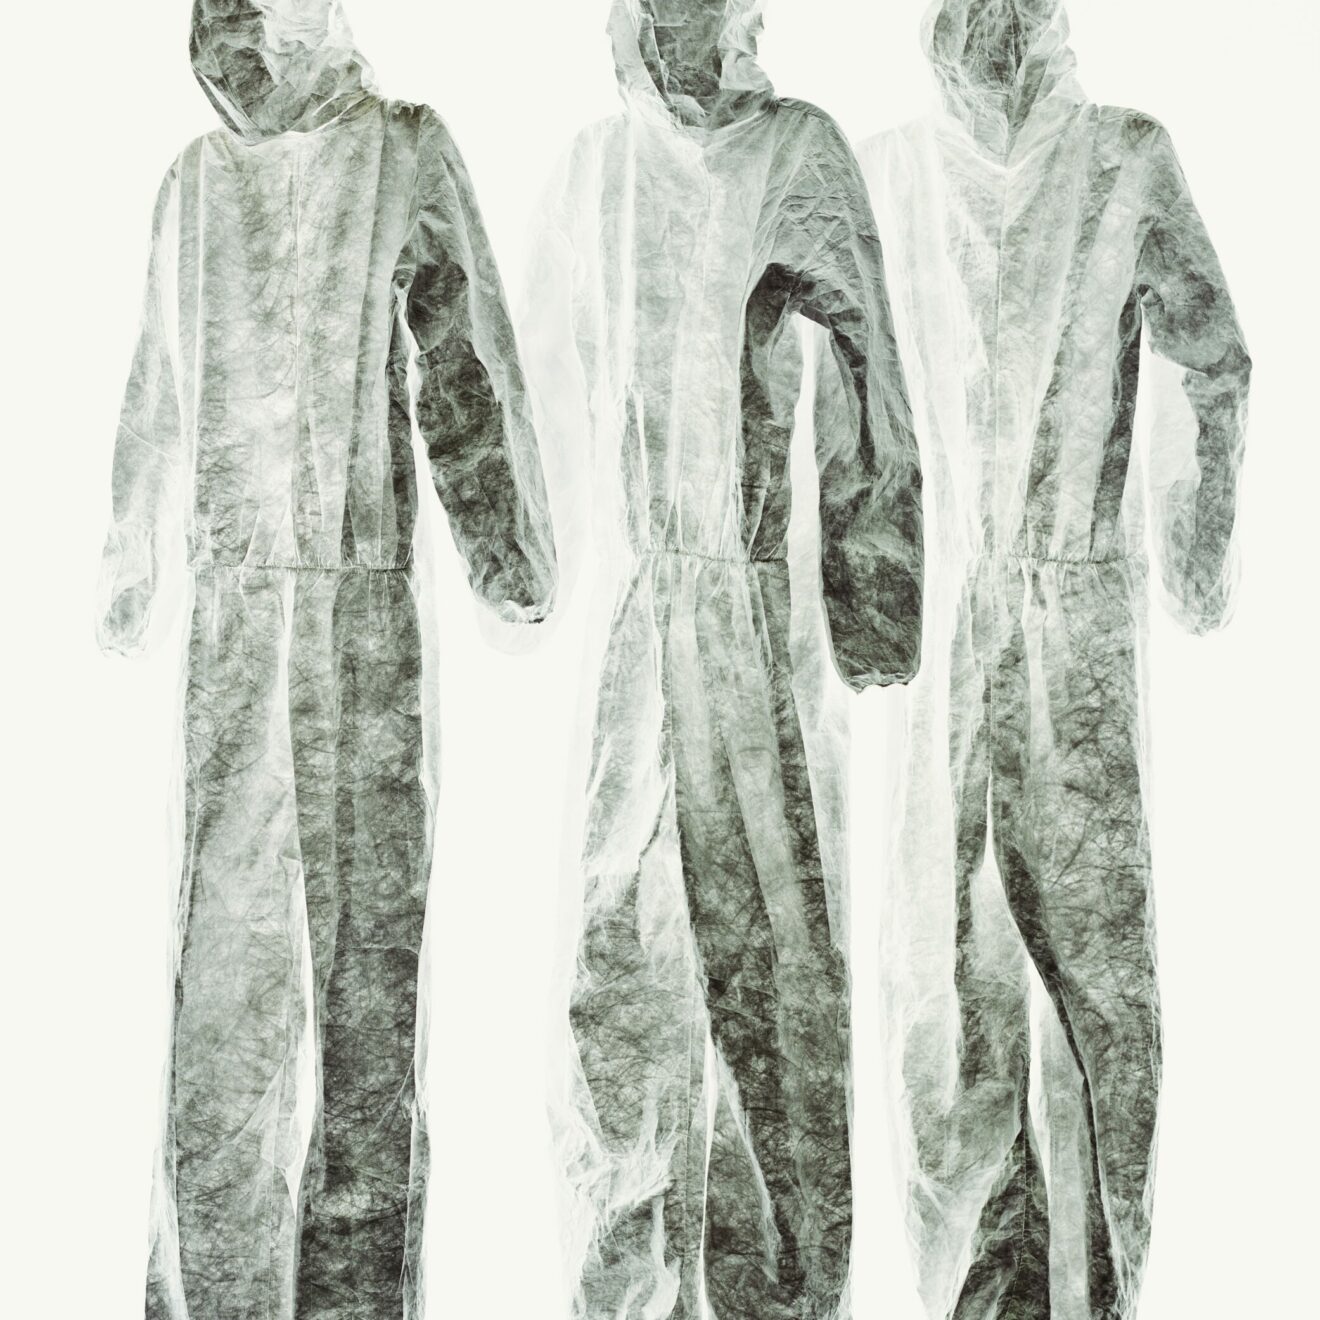 Sonja Braas, « Suits », 2015, © VG Bild und Kunst, une image de la série « An Abundance of Caution », 2014-2017 | sonjabraas.com